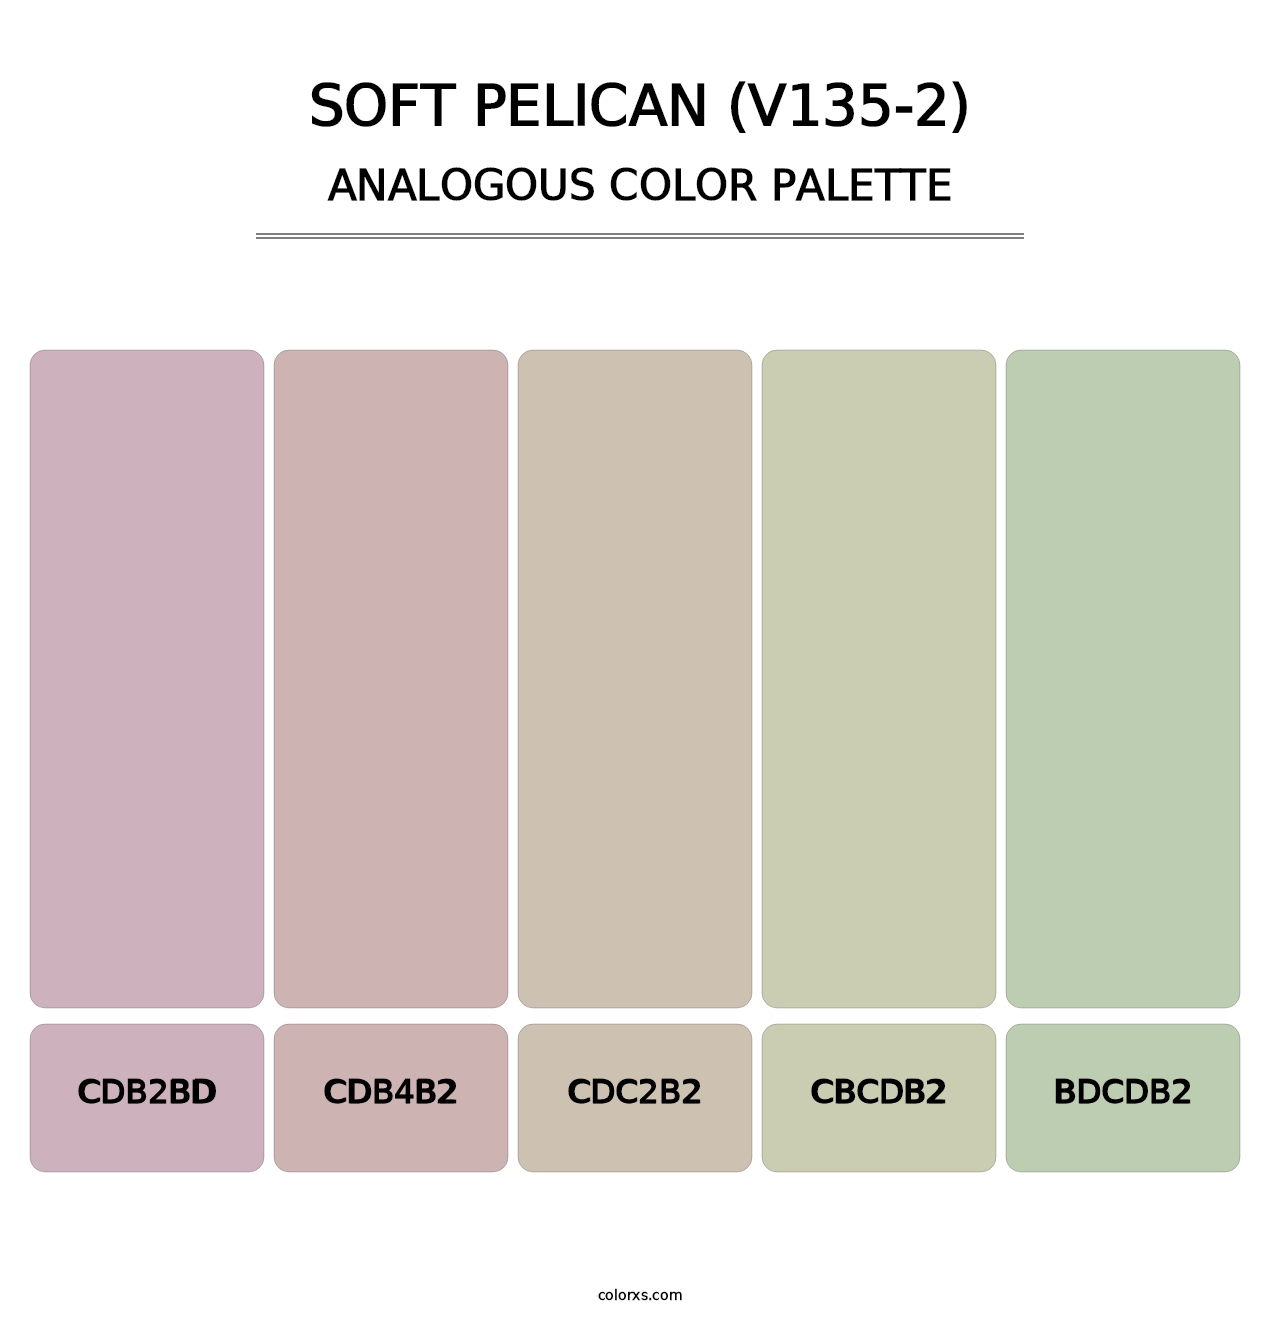 Soft Pelican (V135-2) - Analogous Color Palette